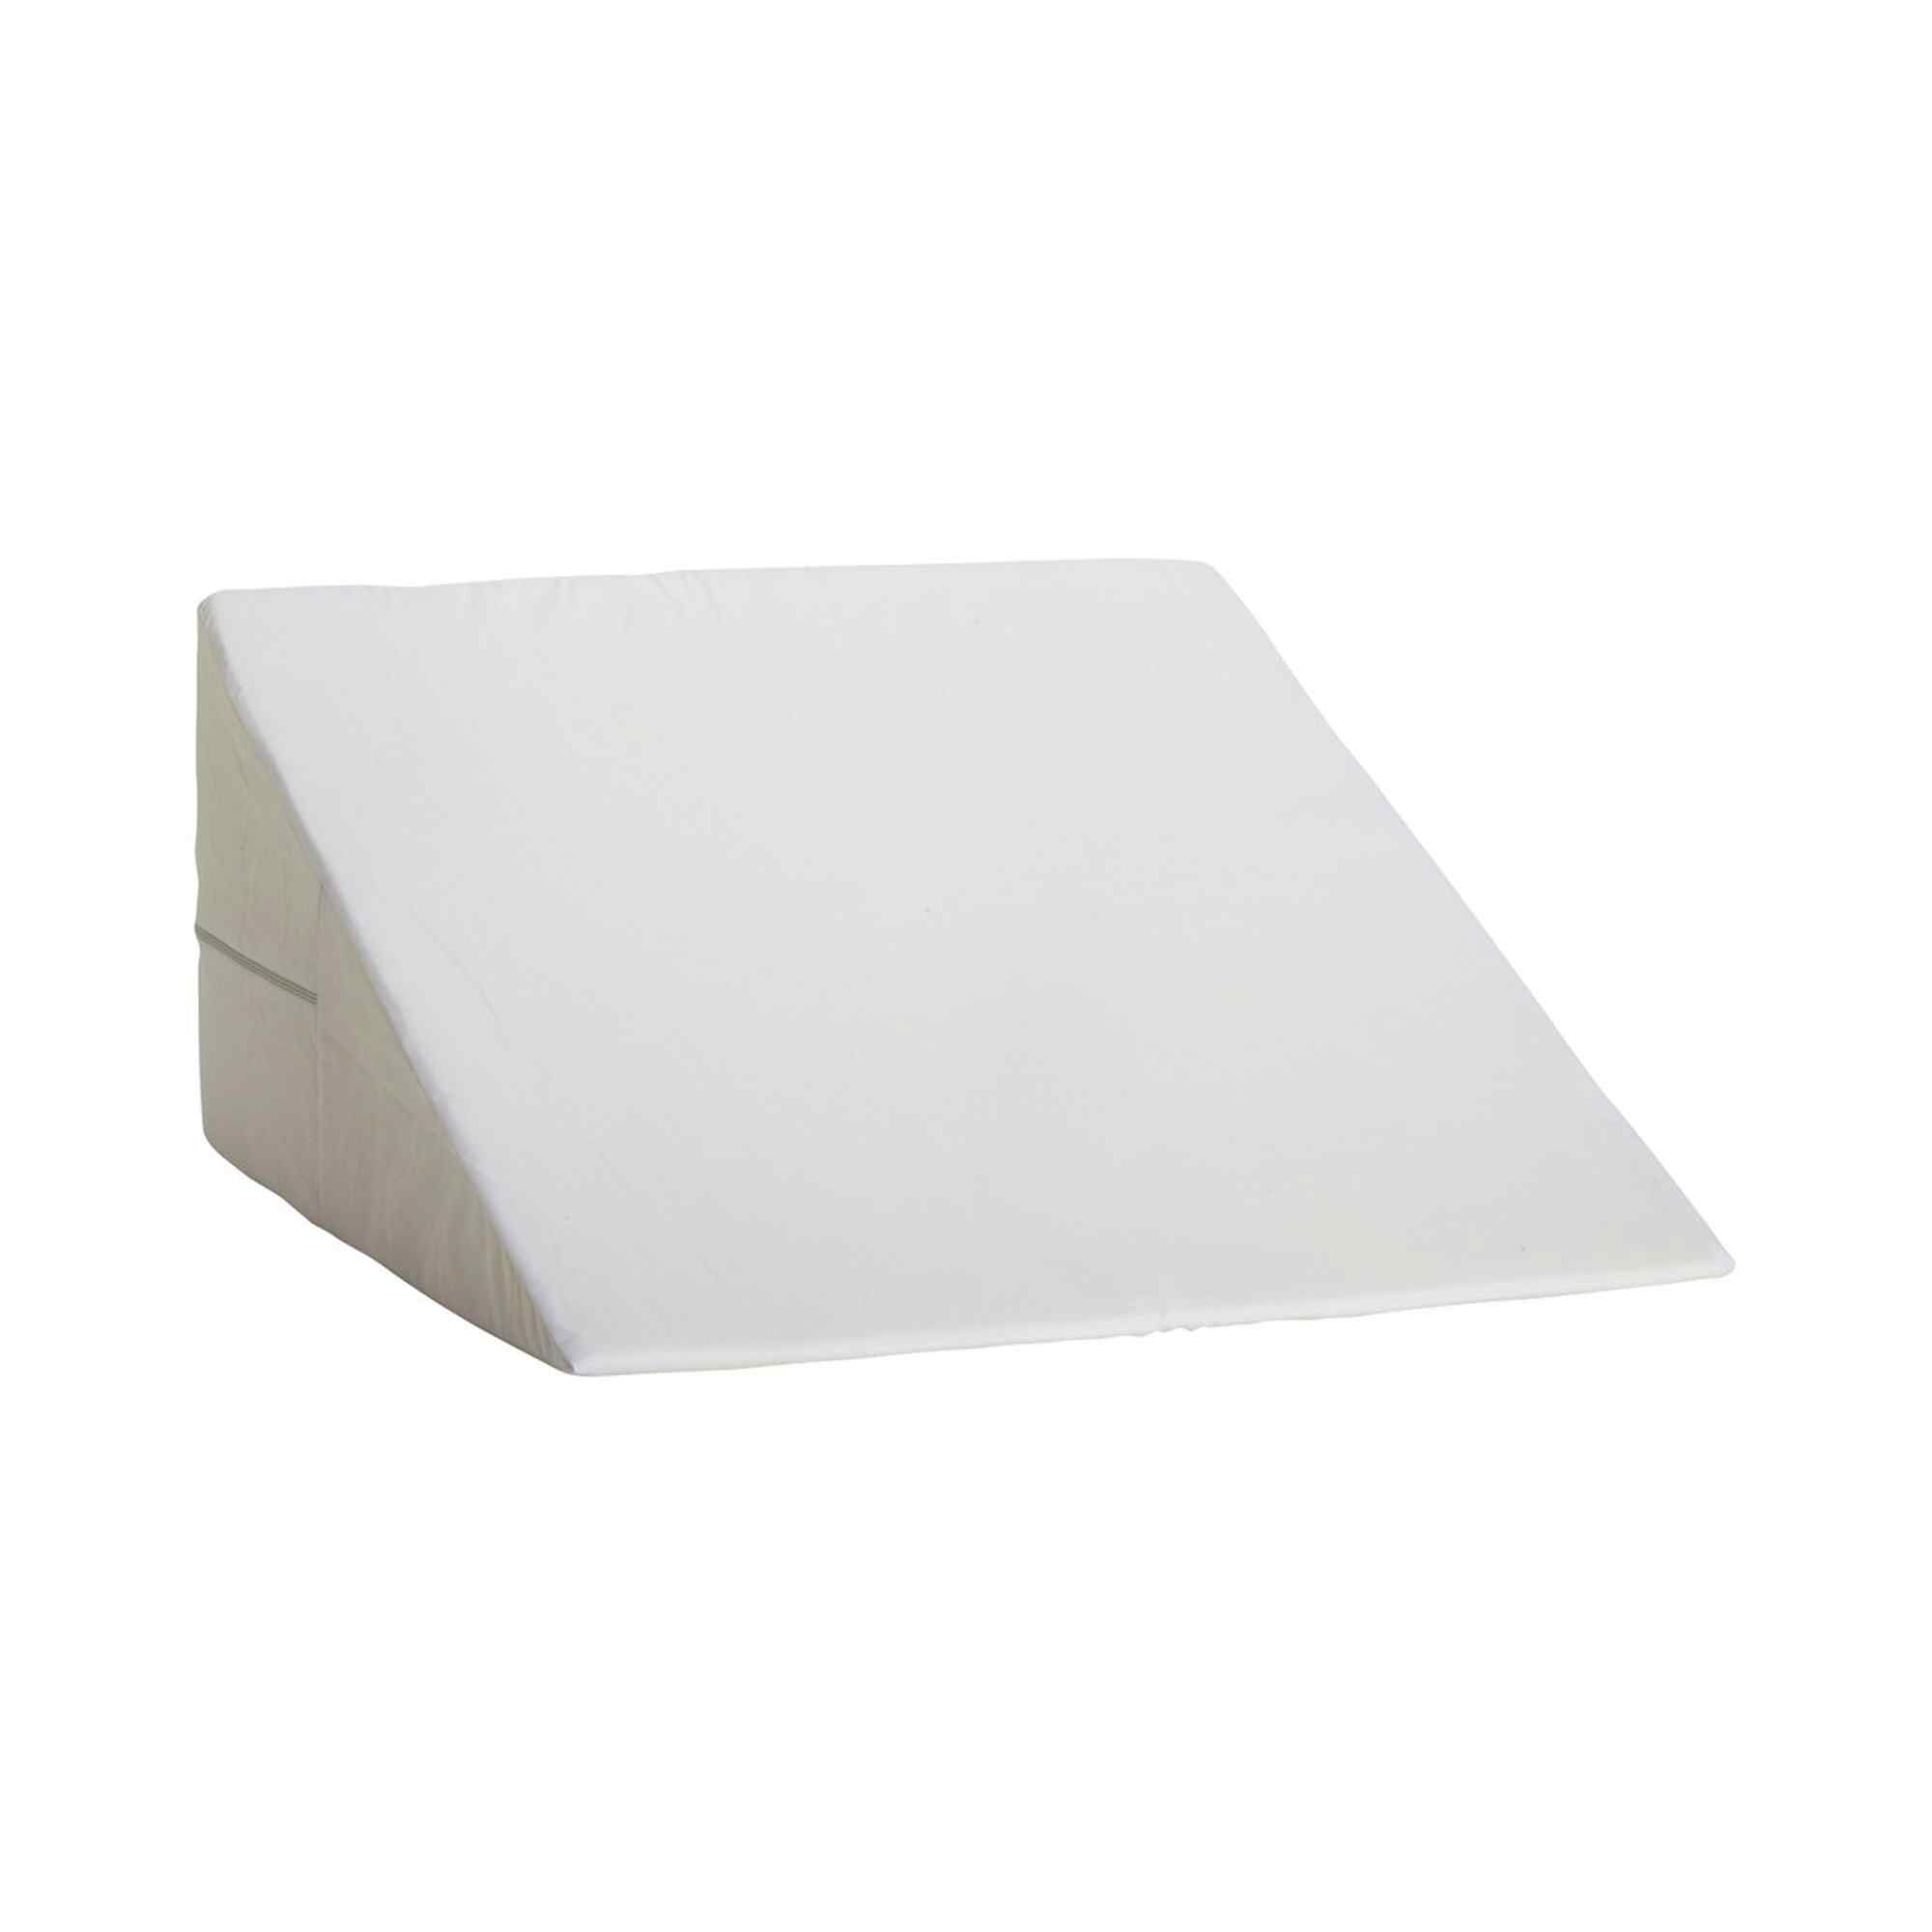 DMI Foam Freestanding Positioning Wedge, 802-8026-1900, White 24 in x 24 in x 7 in - 1 Each